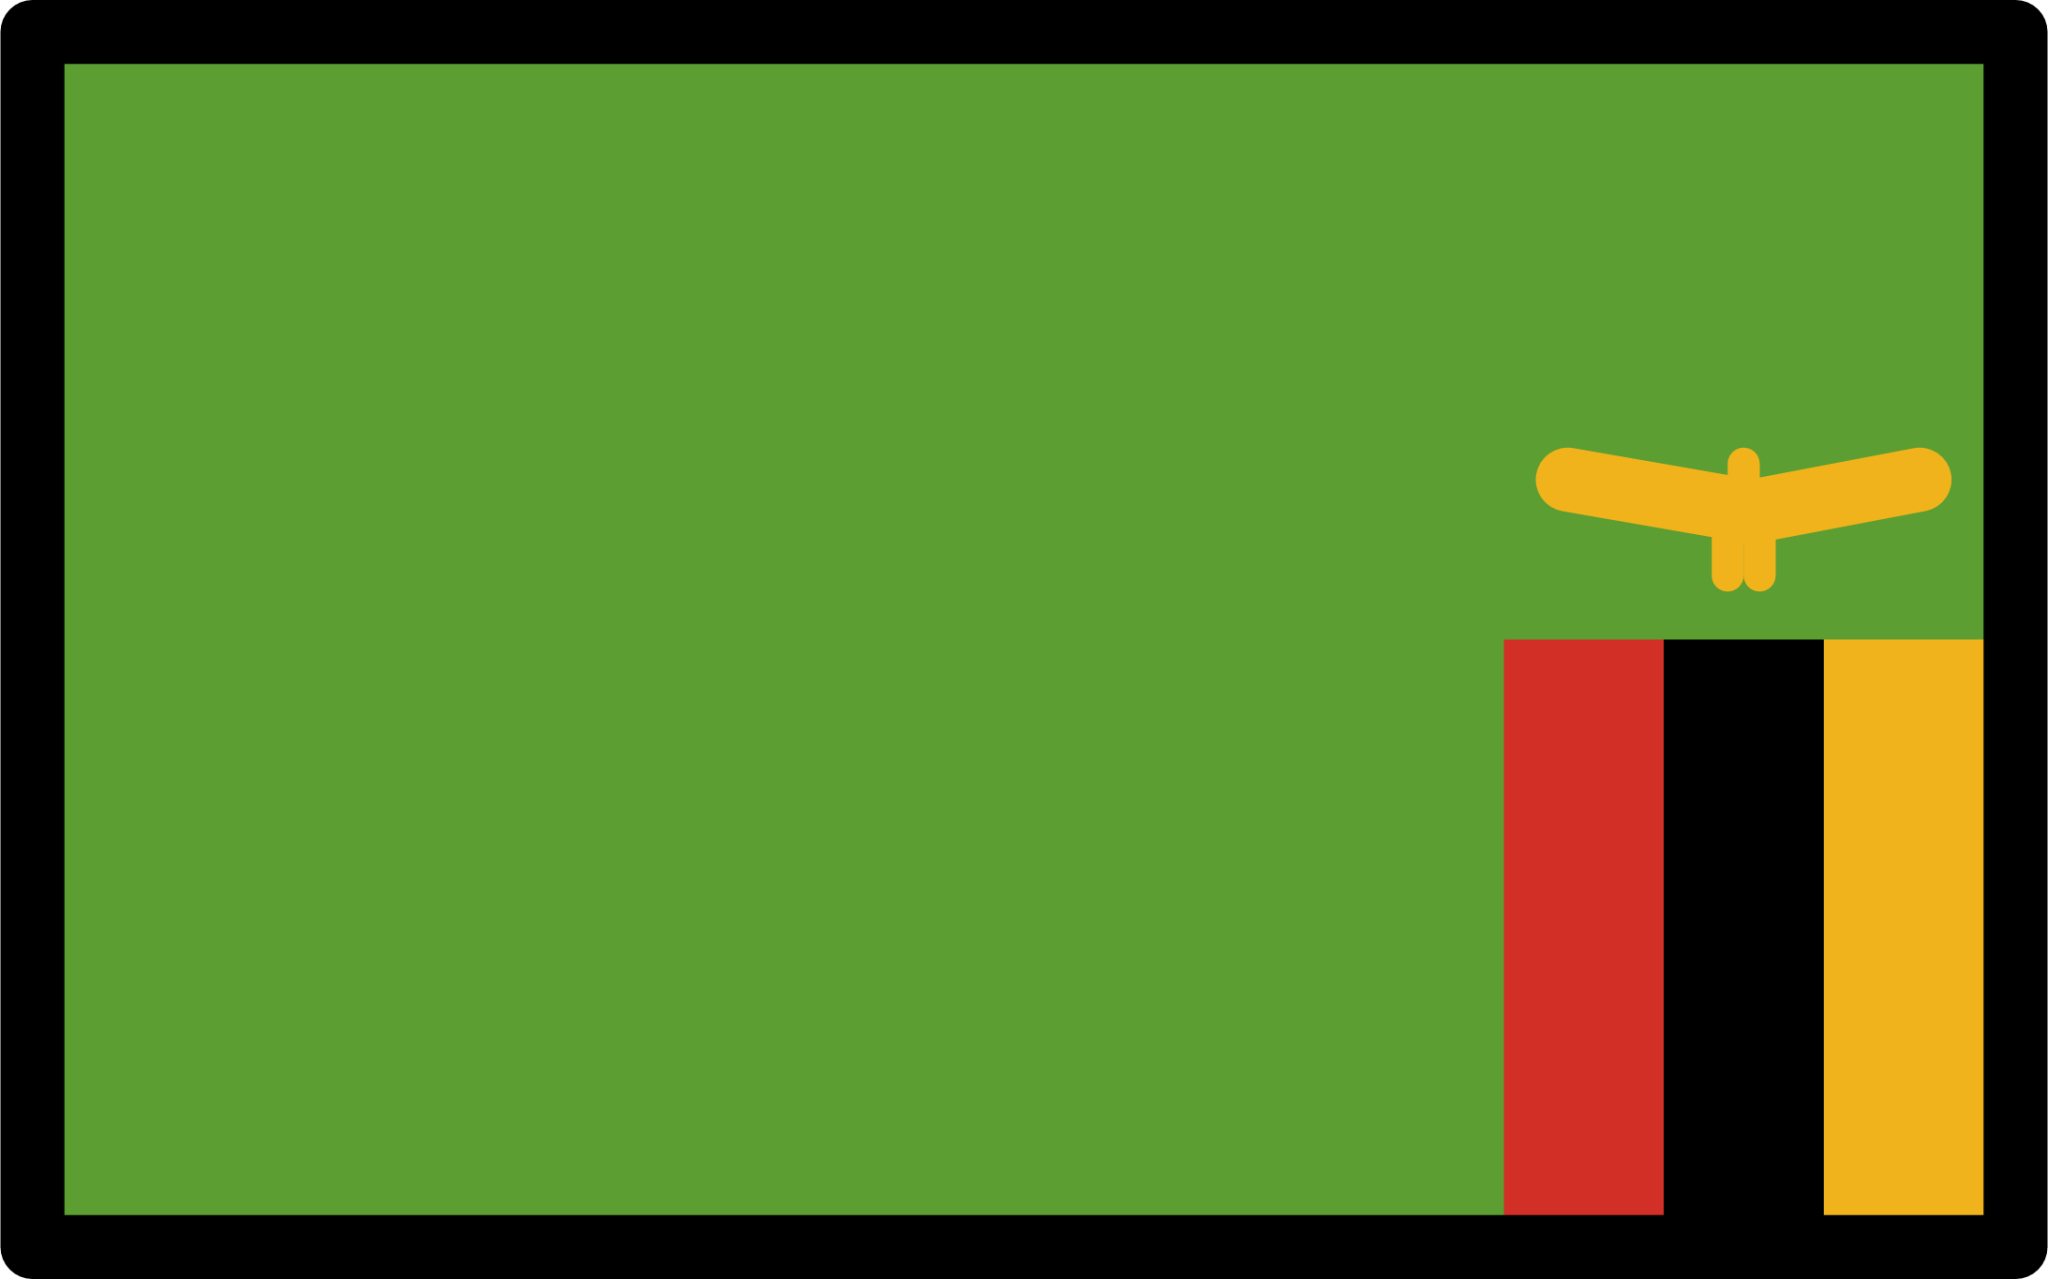 flag: Zambia emoji